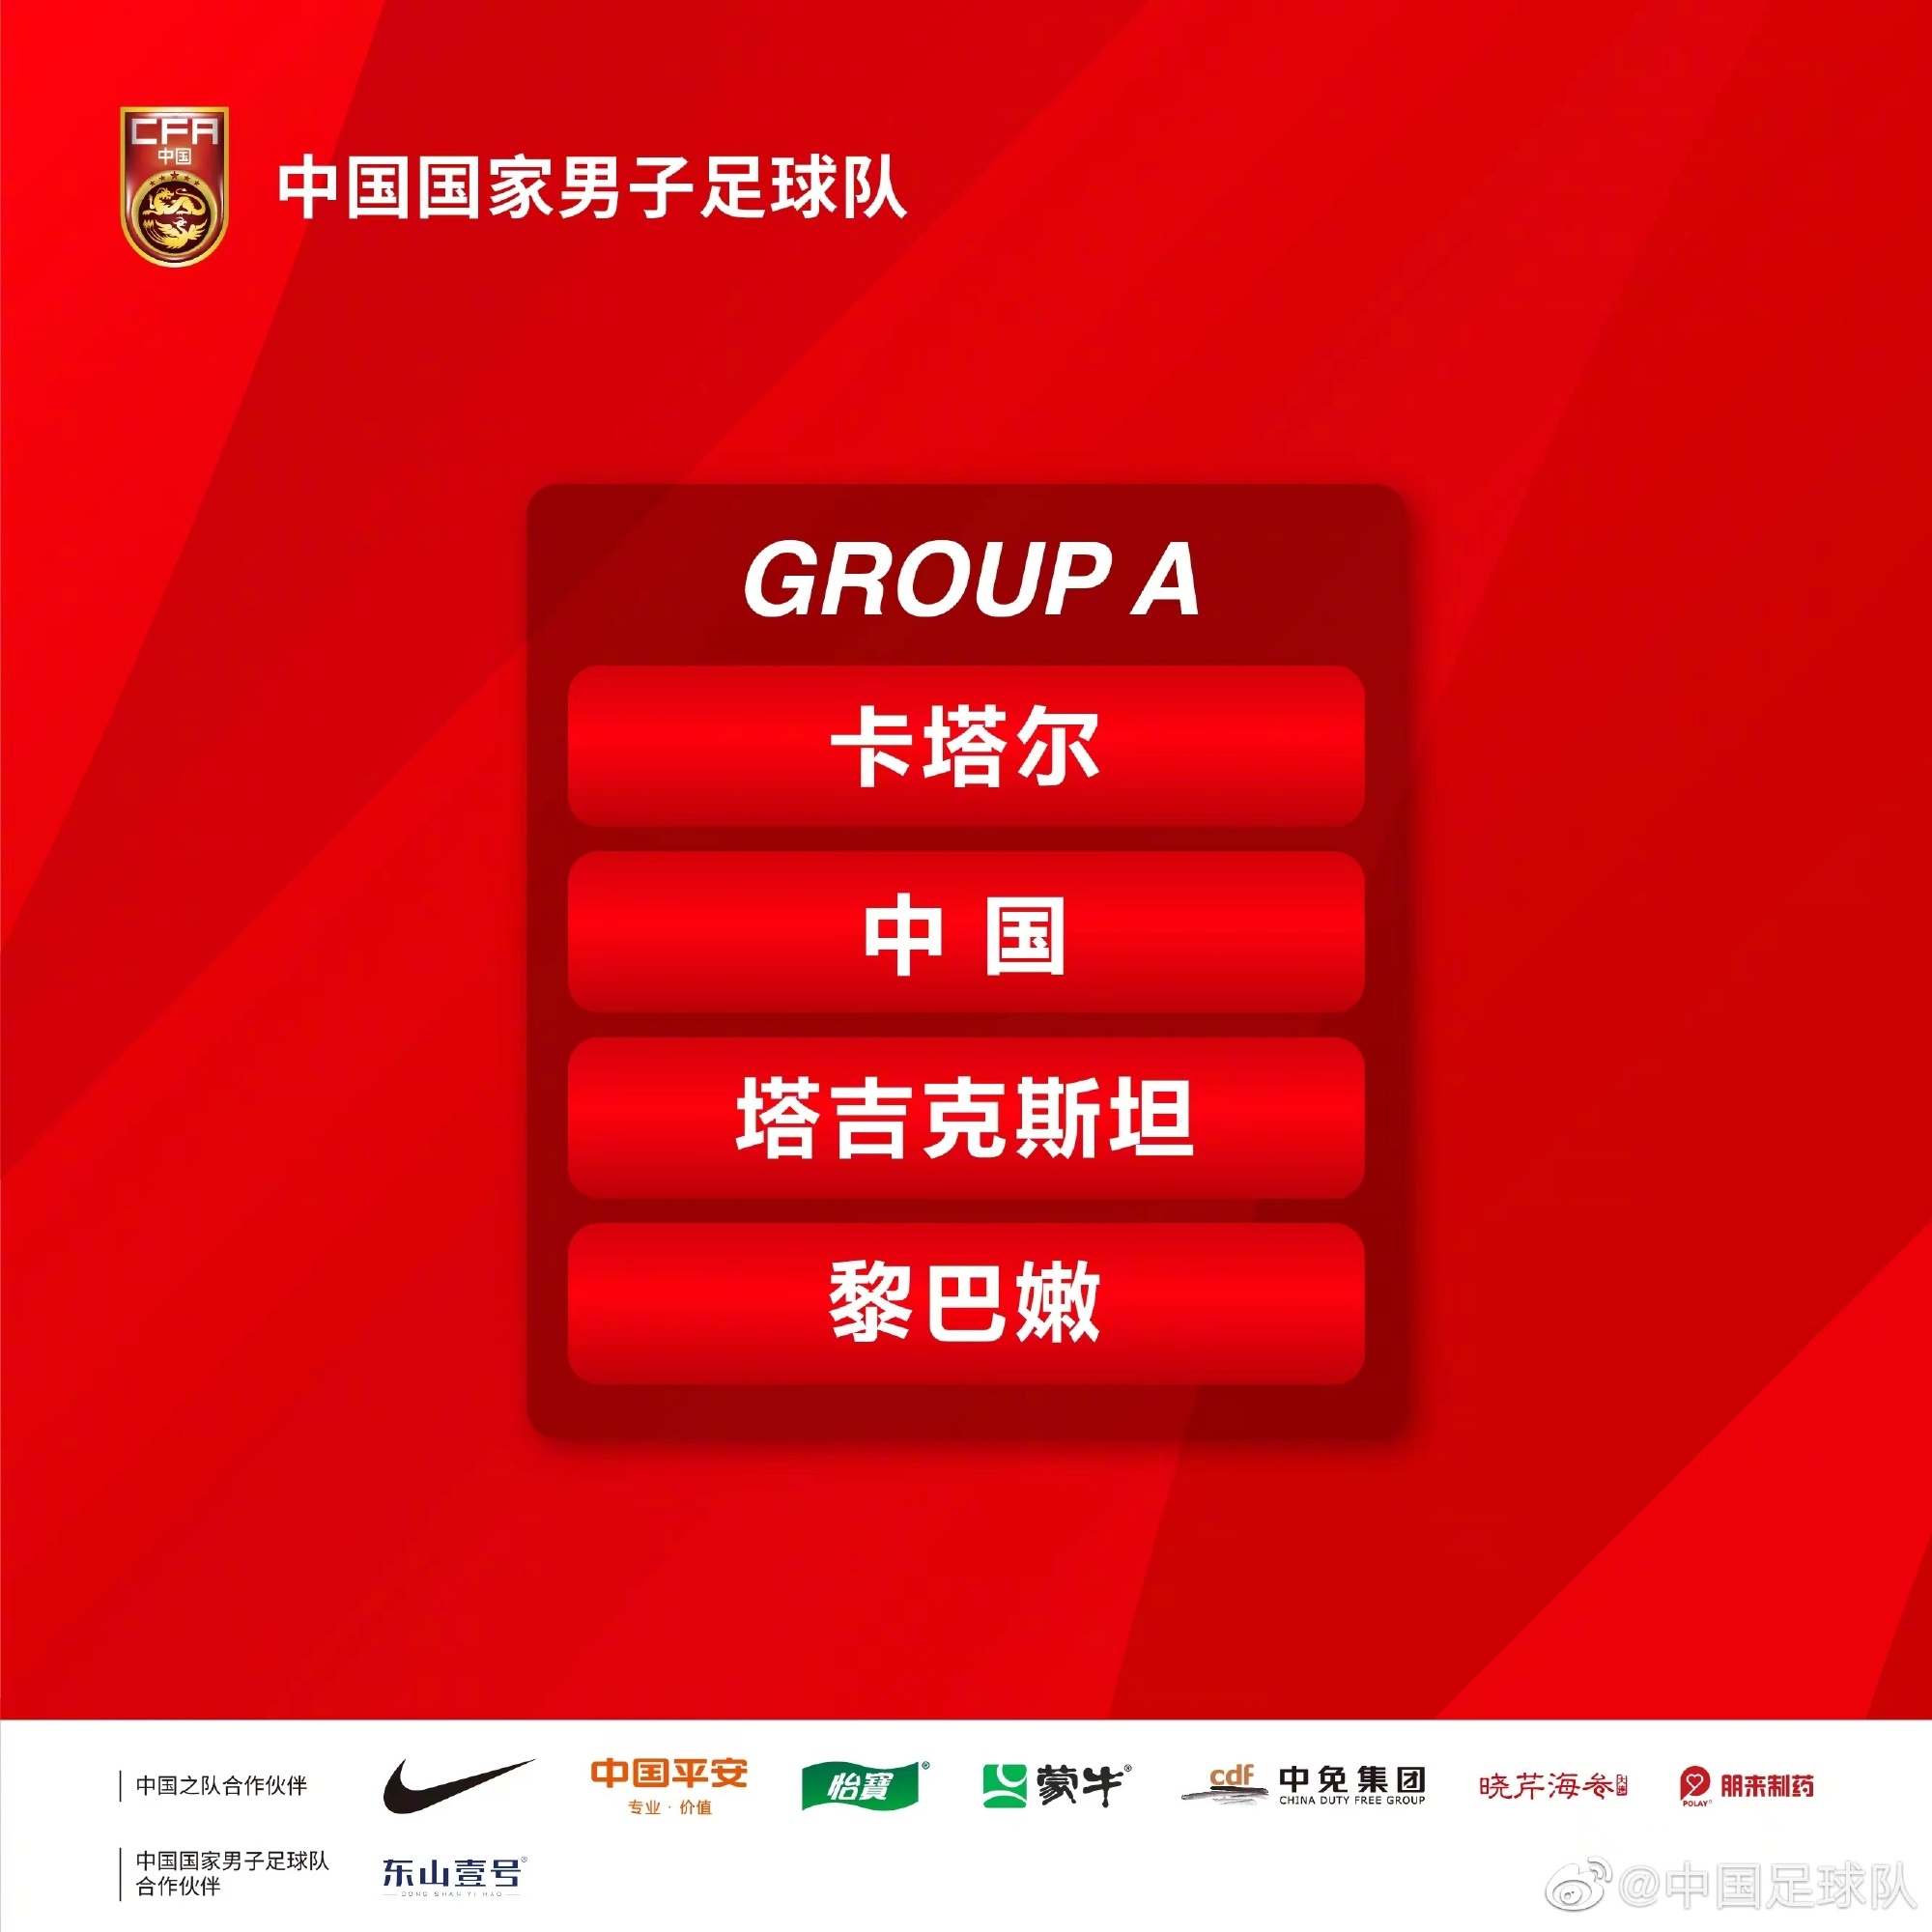 中国队被分入A组，同组对手有卡塔尔队、塔吉克斯坦队和黎巴嫩队